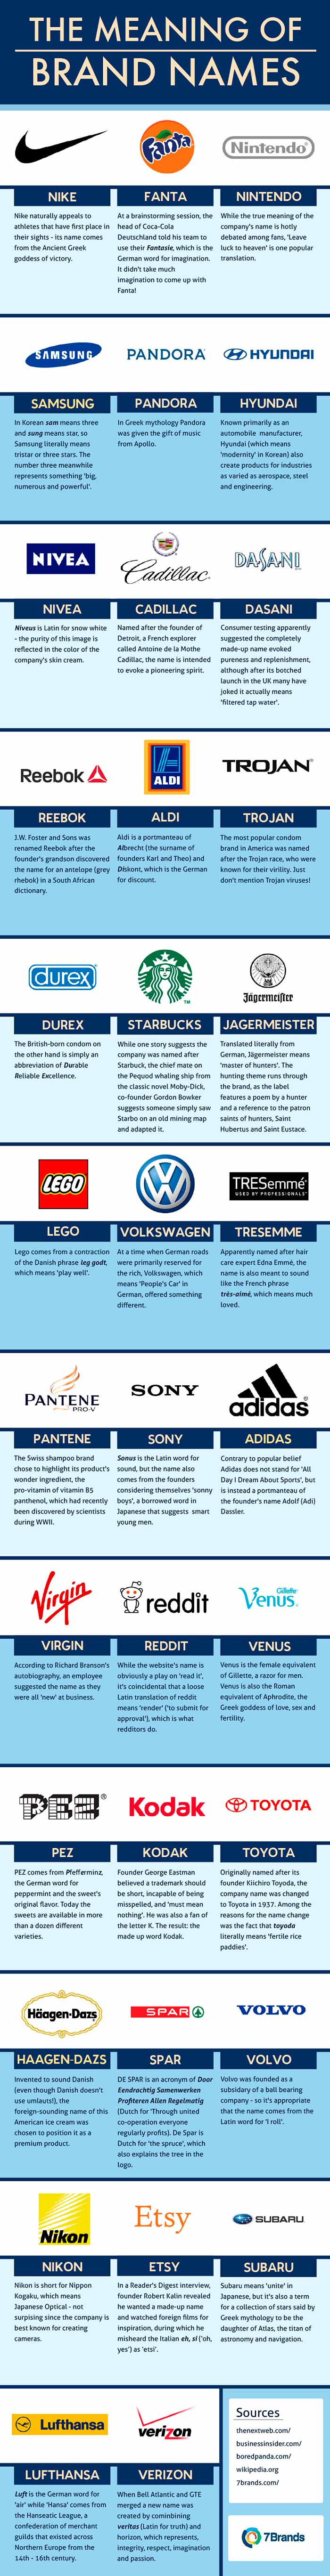 Infografia sobre el significado de los nombres de algunas marcas